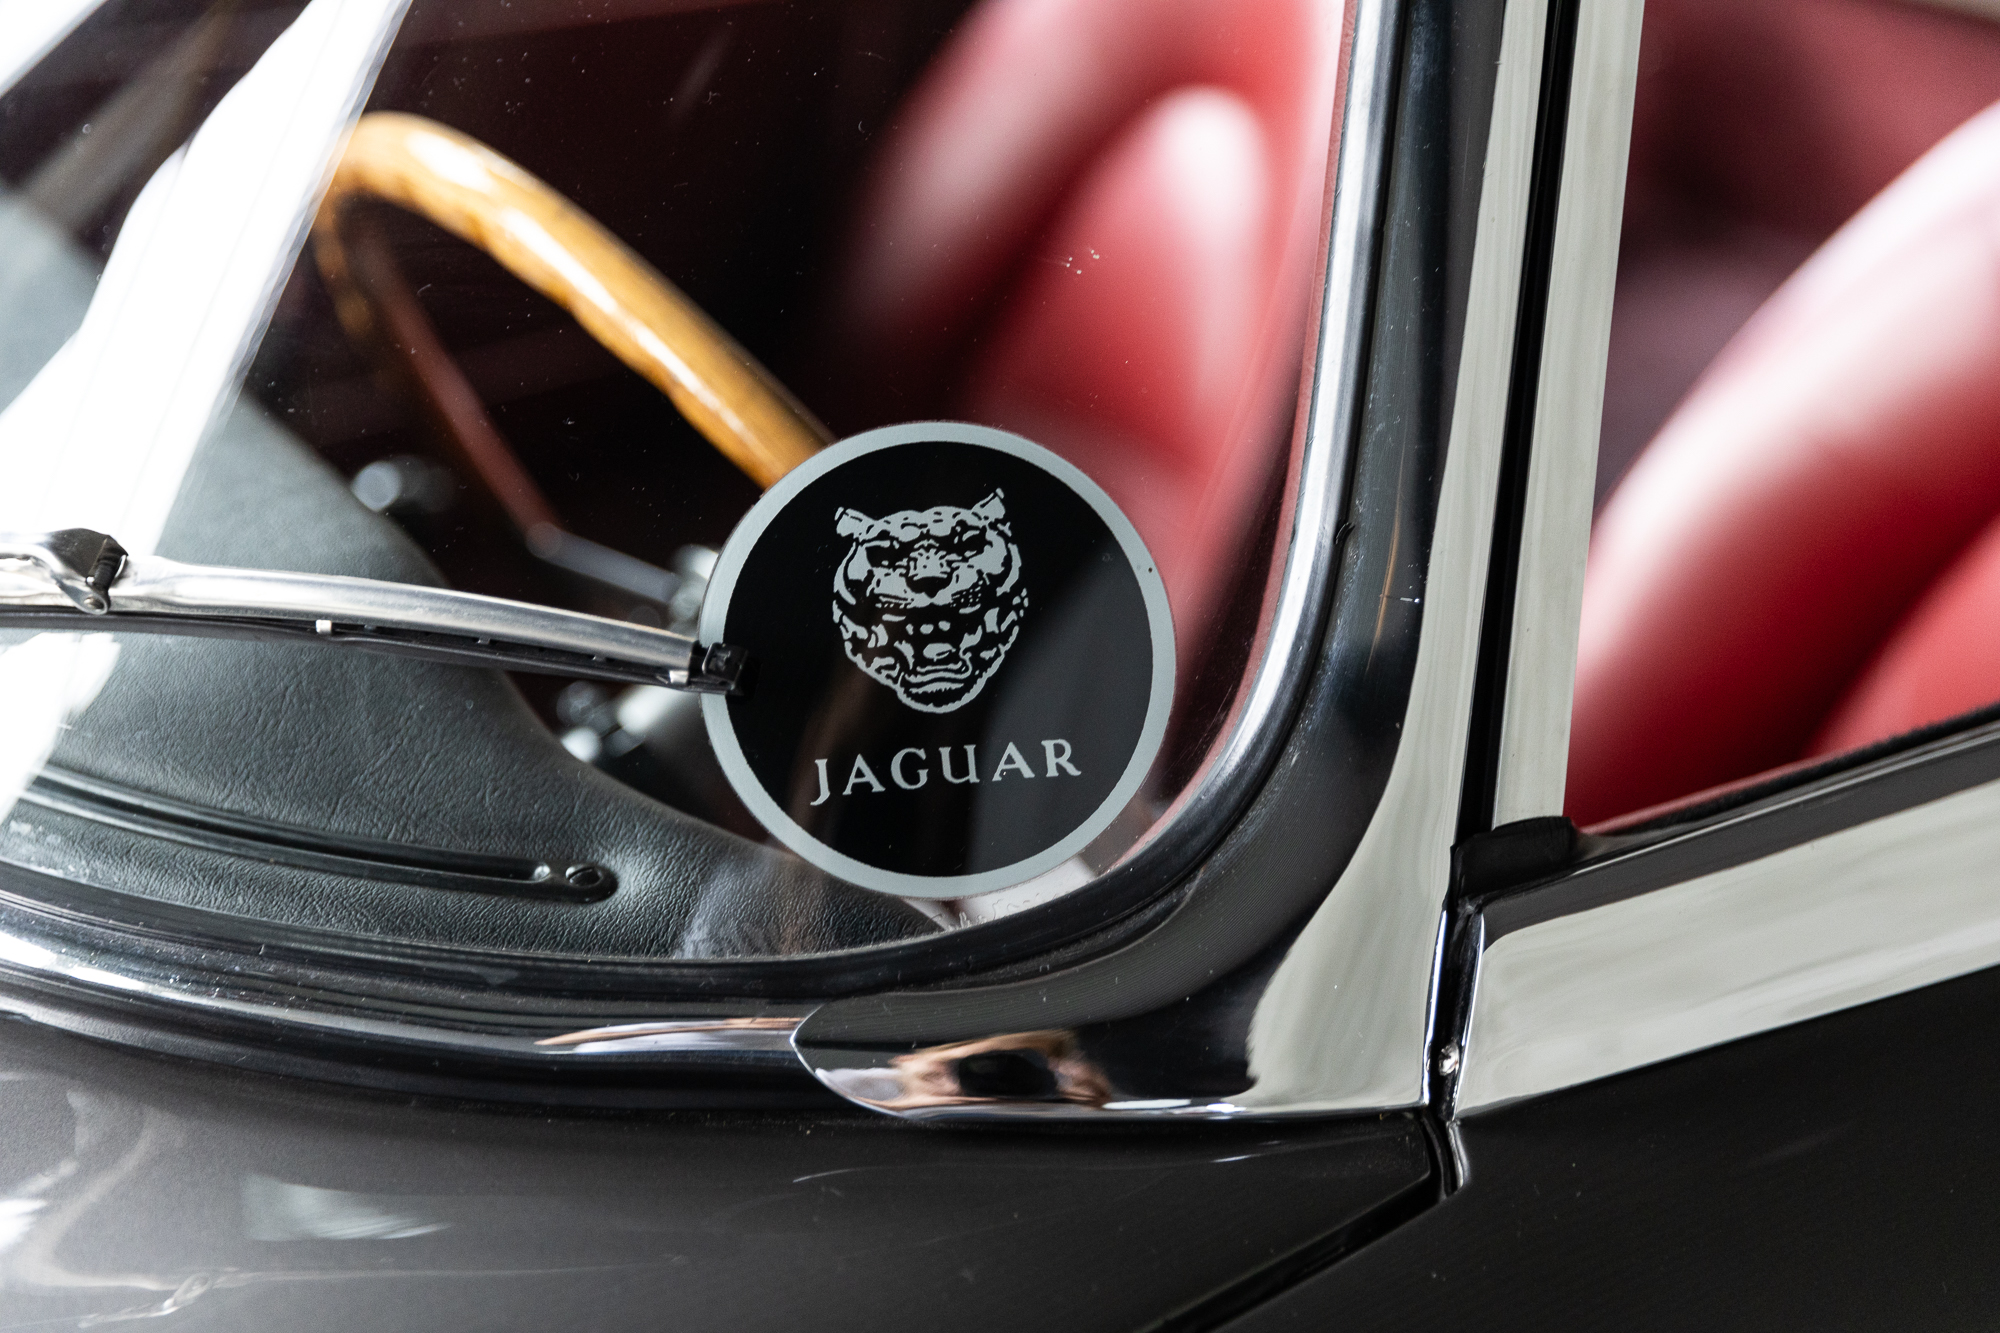 1961-Jaguar-EType-OBL-for-sale-DriveCity-Sales-72dpi-5